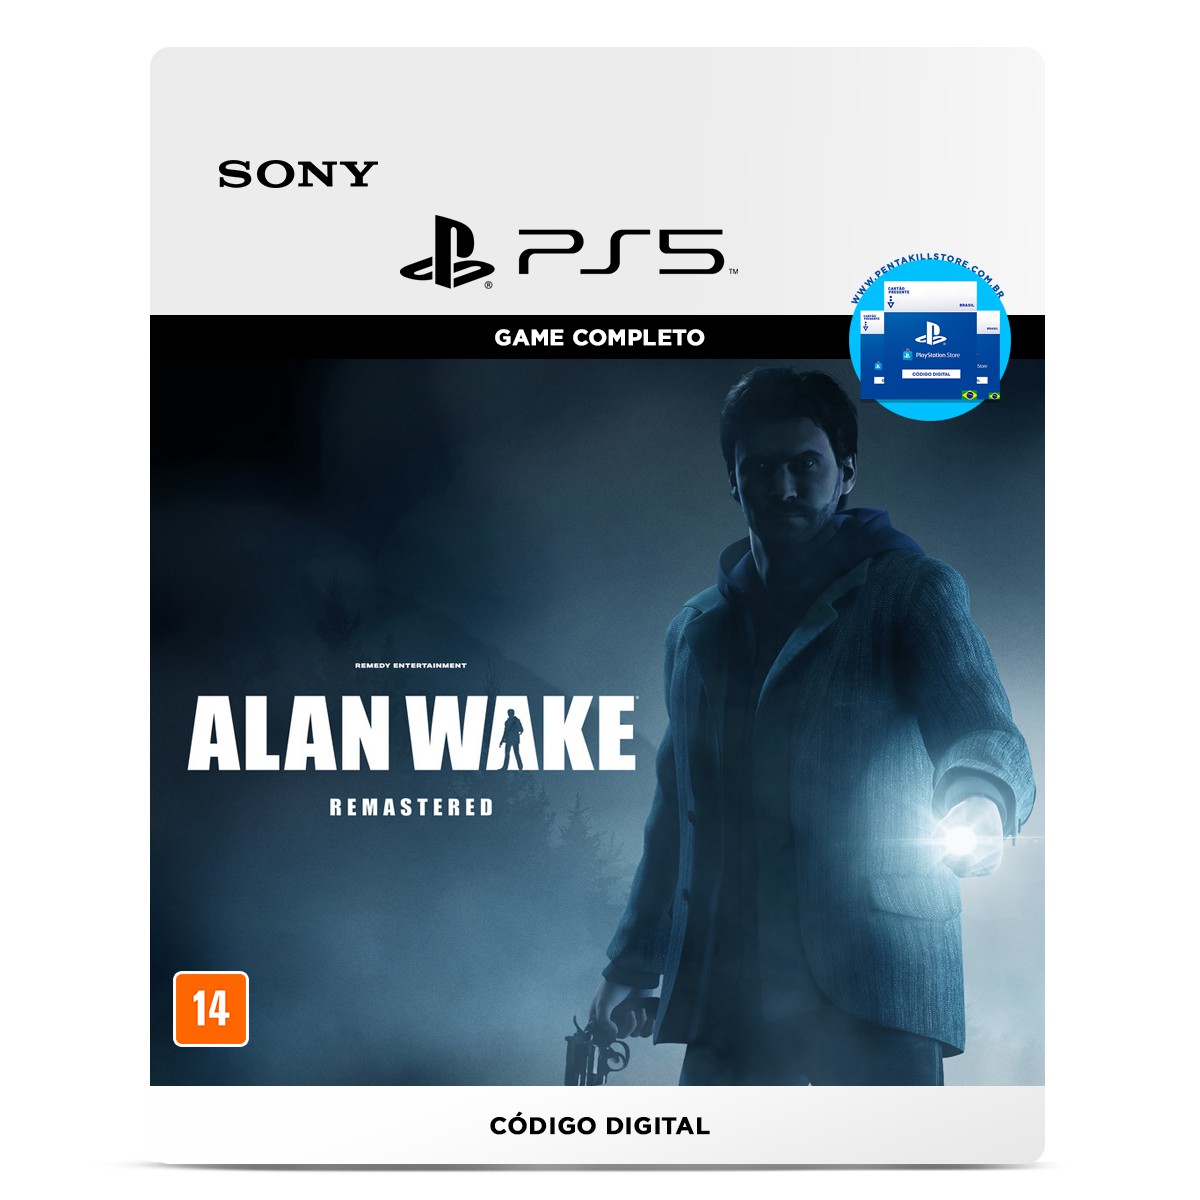 Horizon Zero Dawn Complete Edition - PC Código Digital - PentaKill Store -  Gift Card e Games